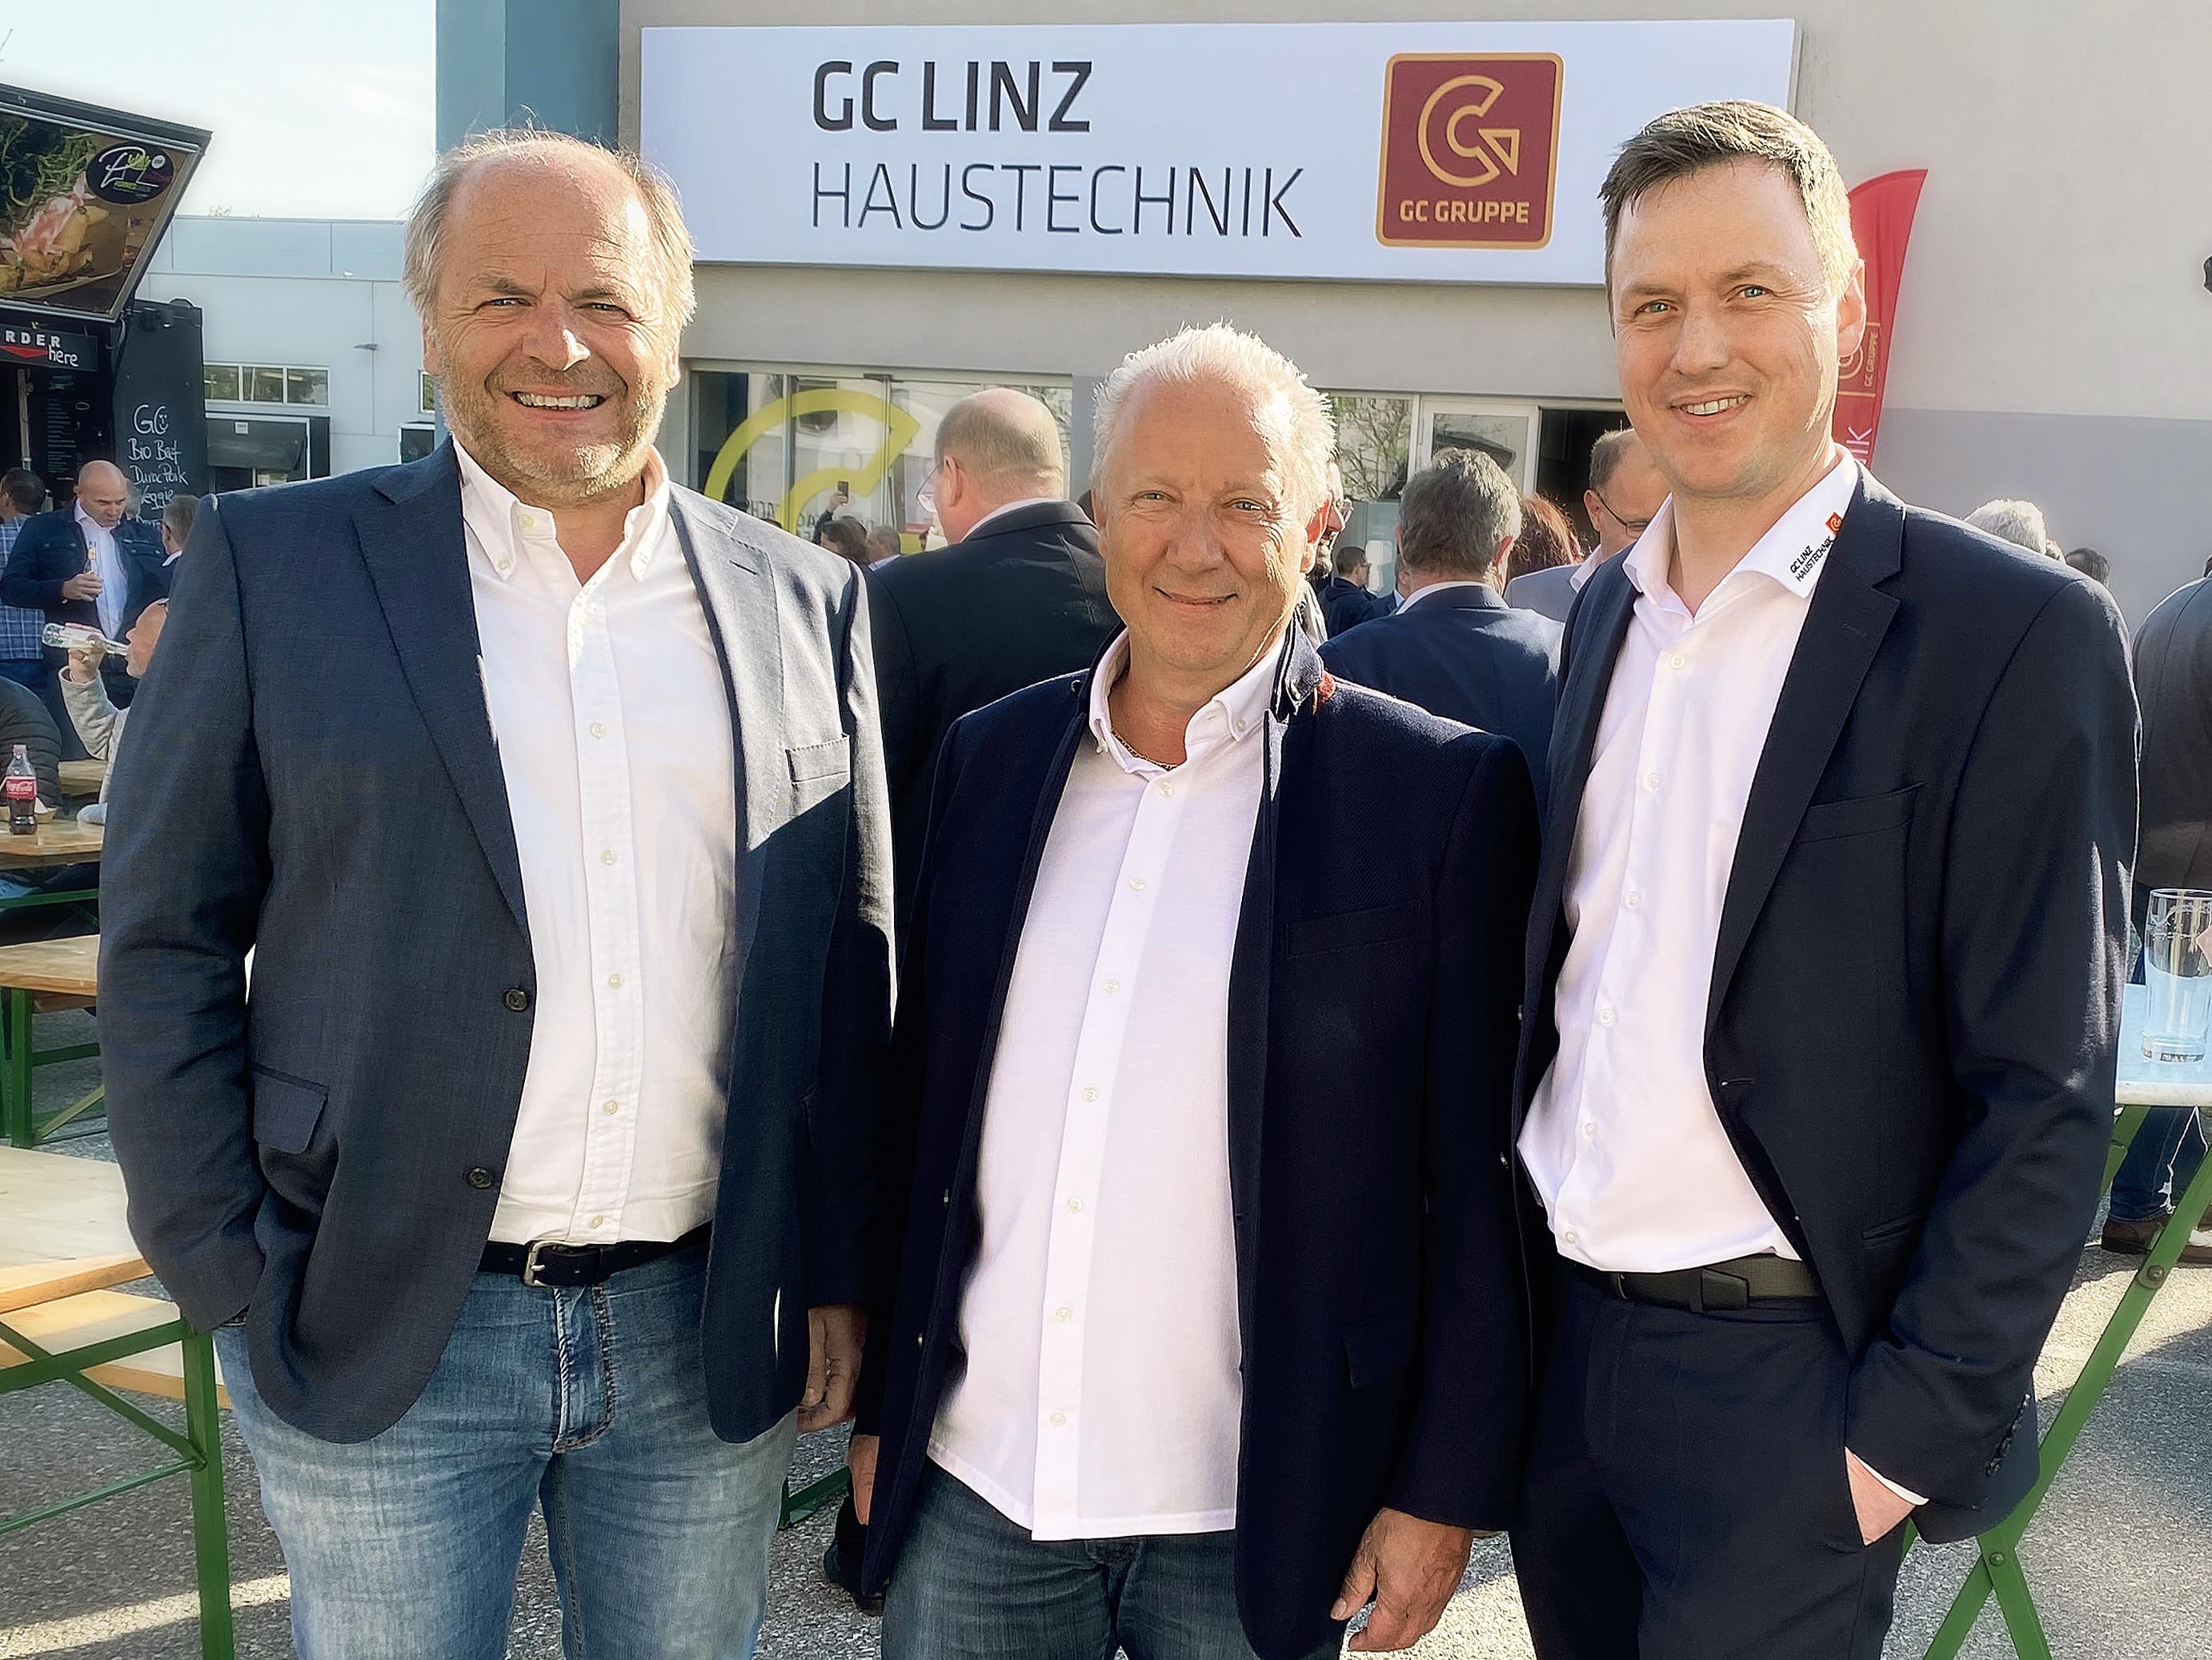 Peter Moser, Harald Koppler, Peter Öller bei Eröffnungsevent GC LINZ